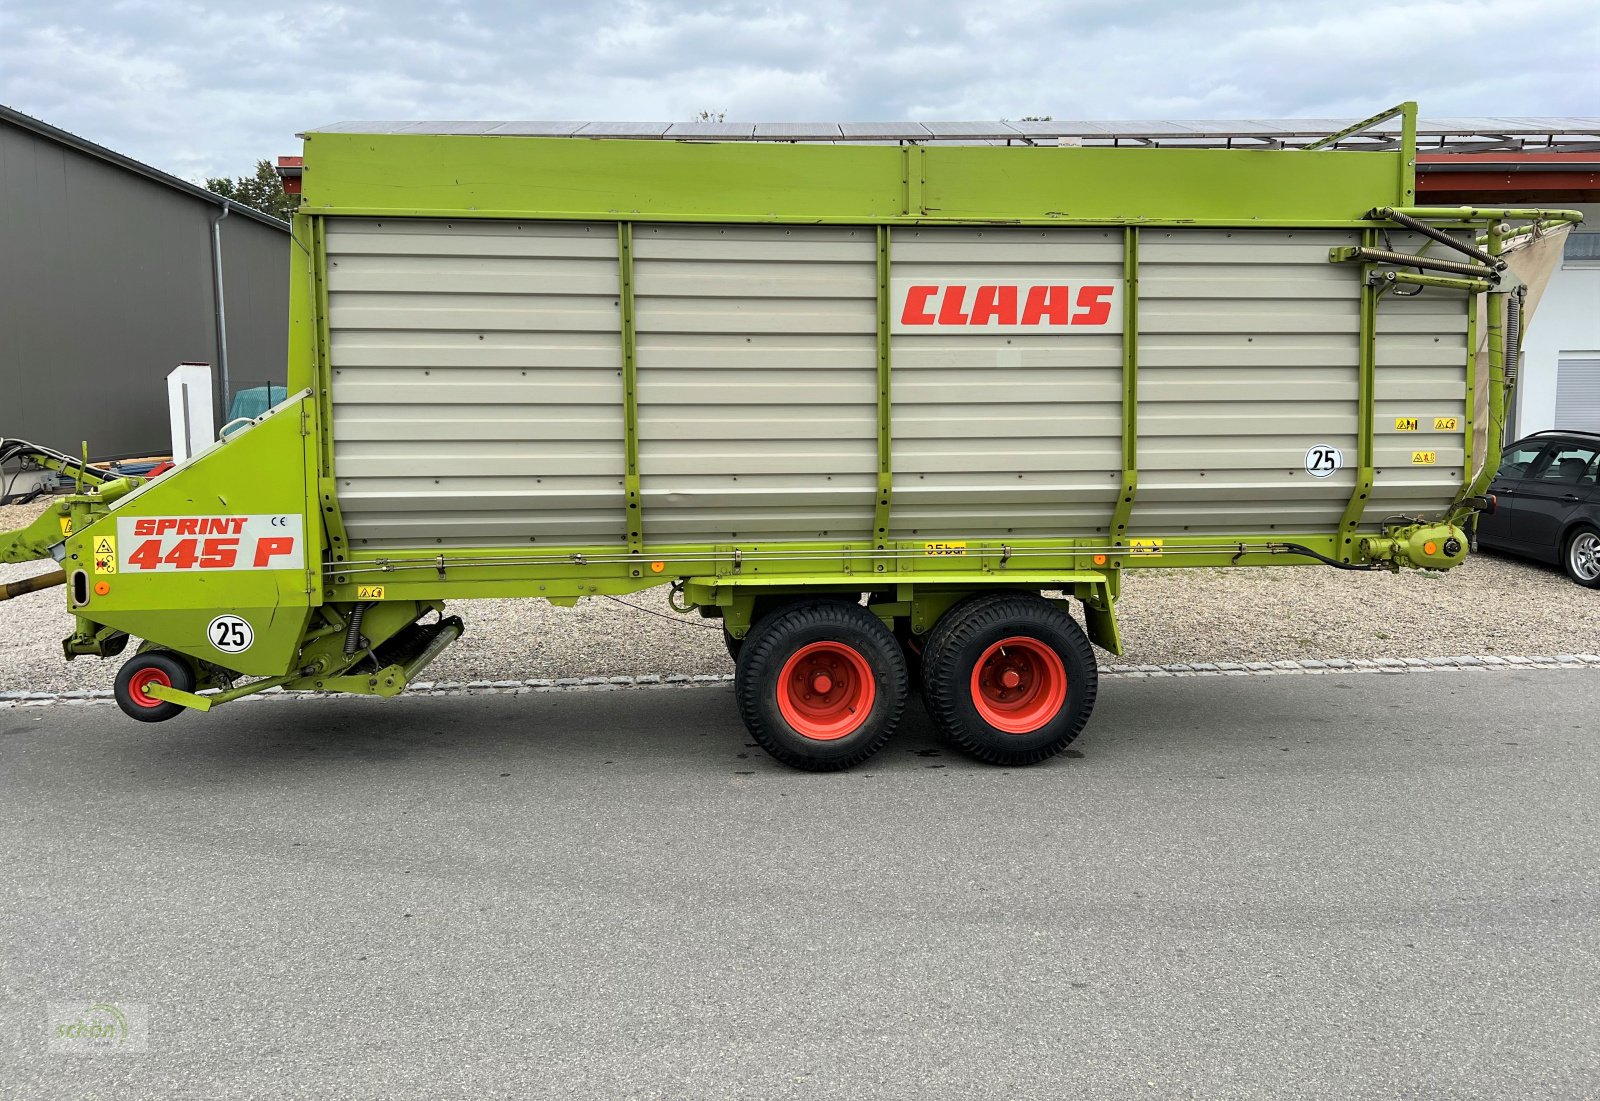 Ladewagen типа CLAAS Sprint 445 P mit Druckluftbremse - aus erster Hand - 40 km/h Zulassung möglich, Gebrauchtmaschine в Burgrieden (Фотография 2)